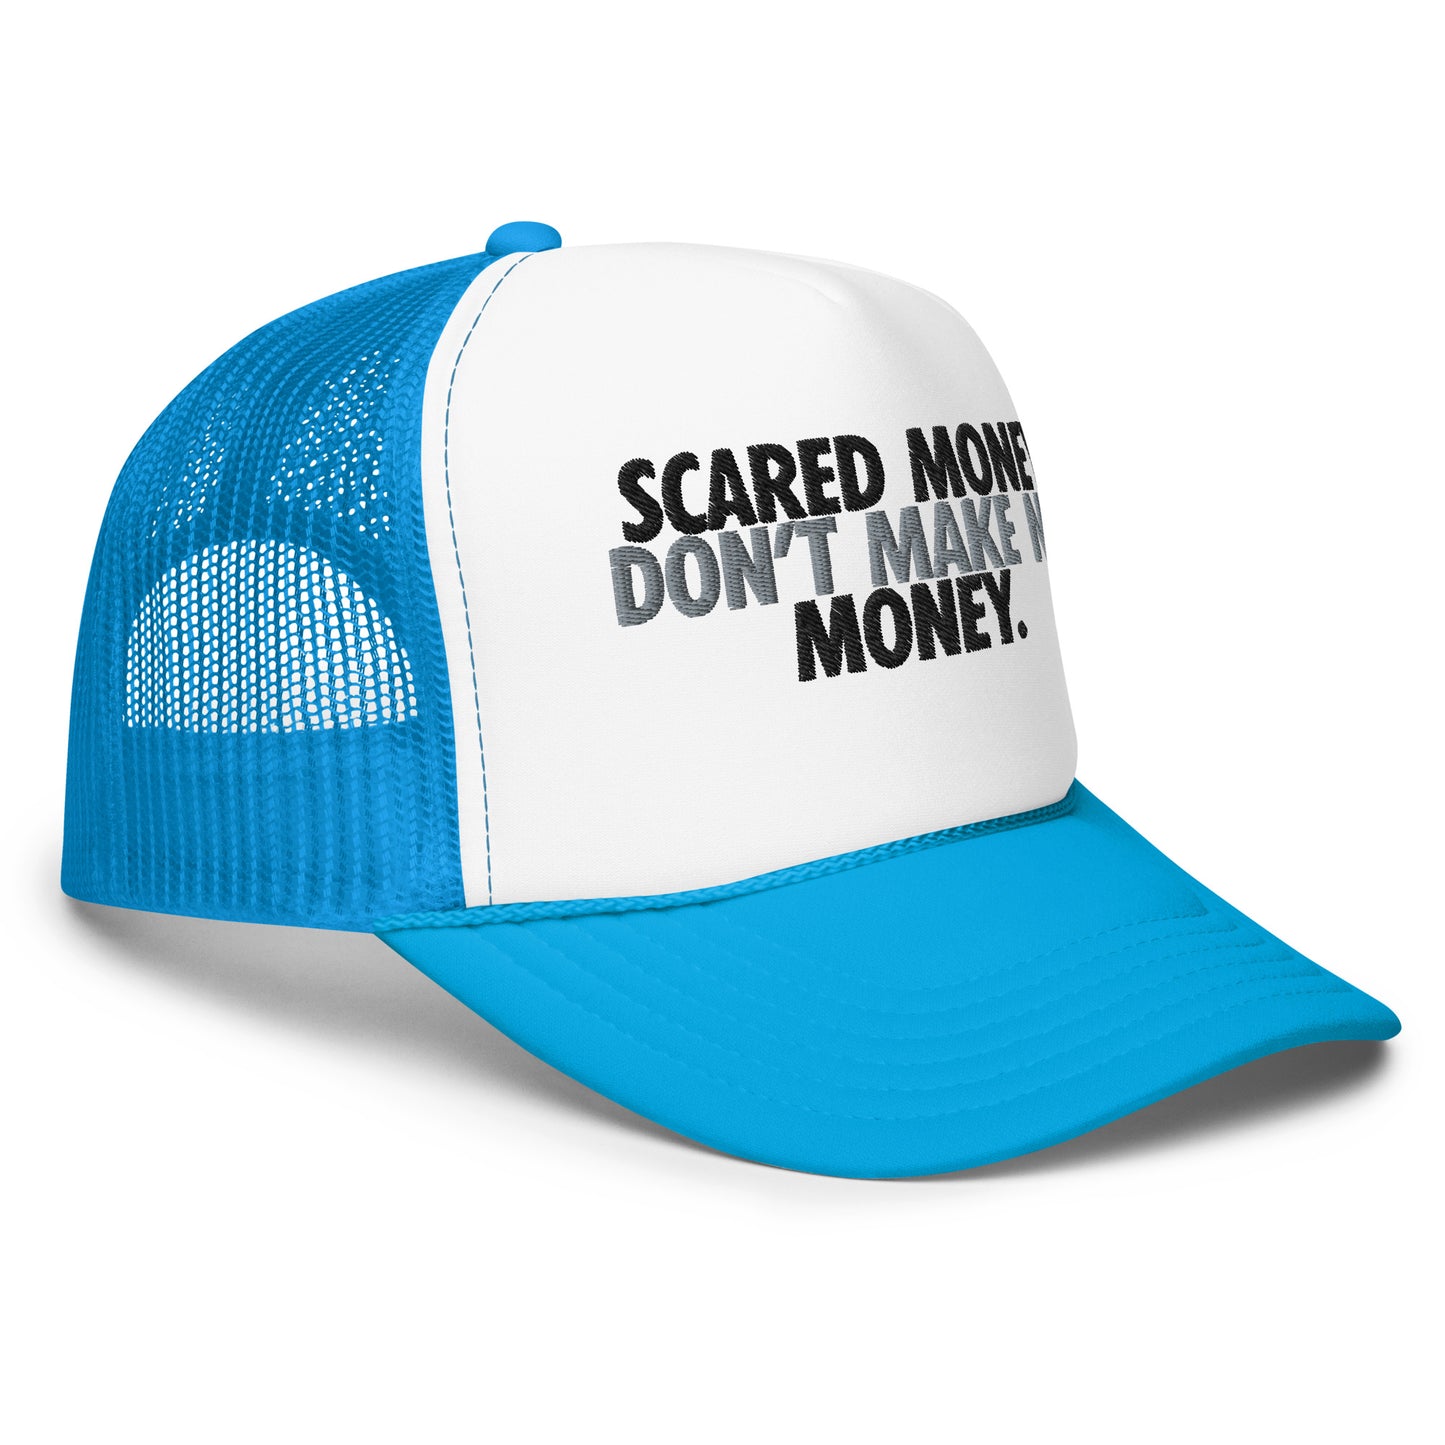 Scared Money Foam trucker hat